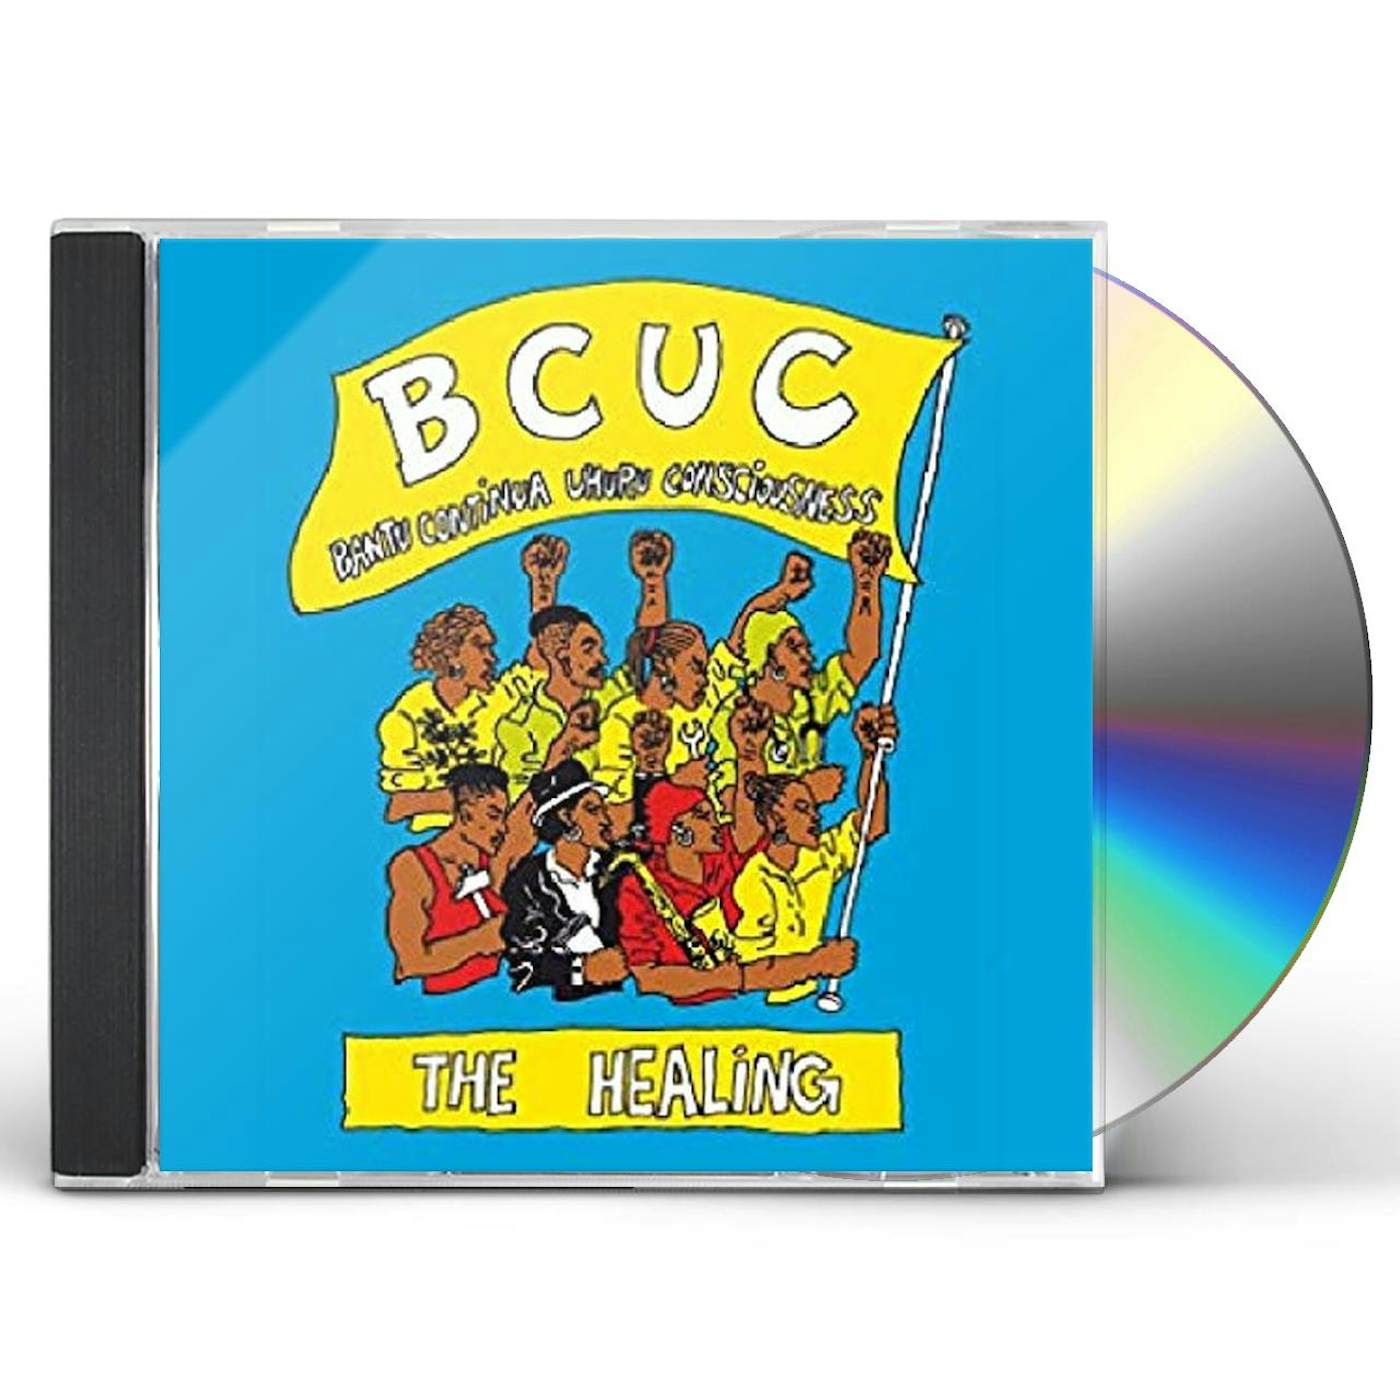 BCUC HEALING CD